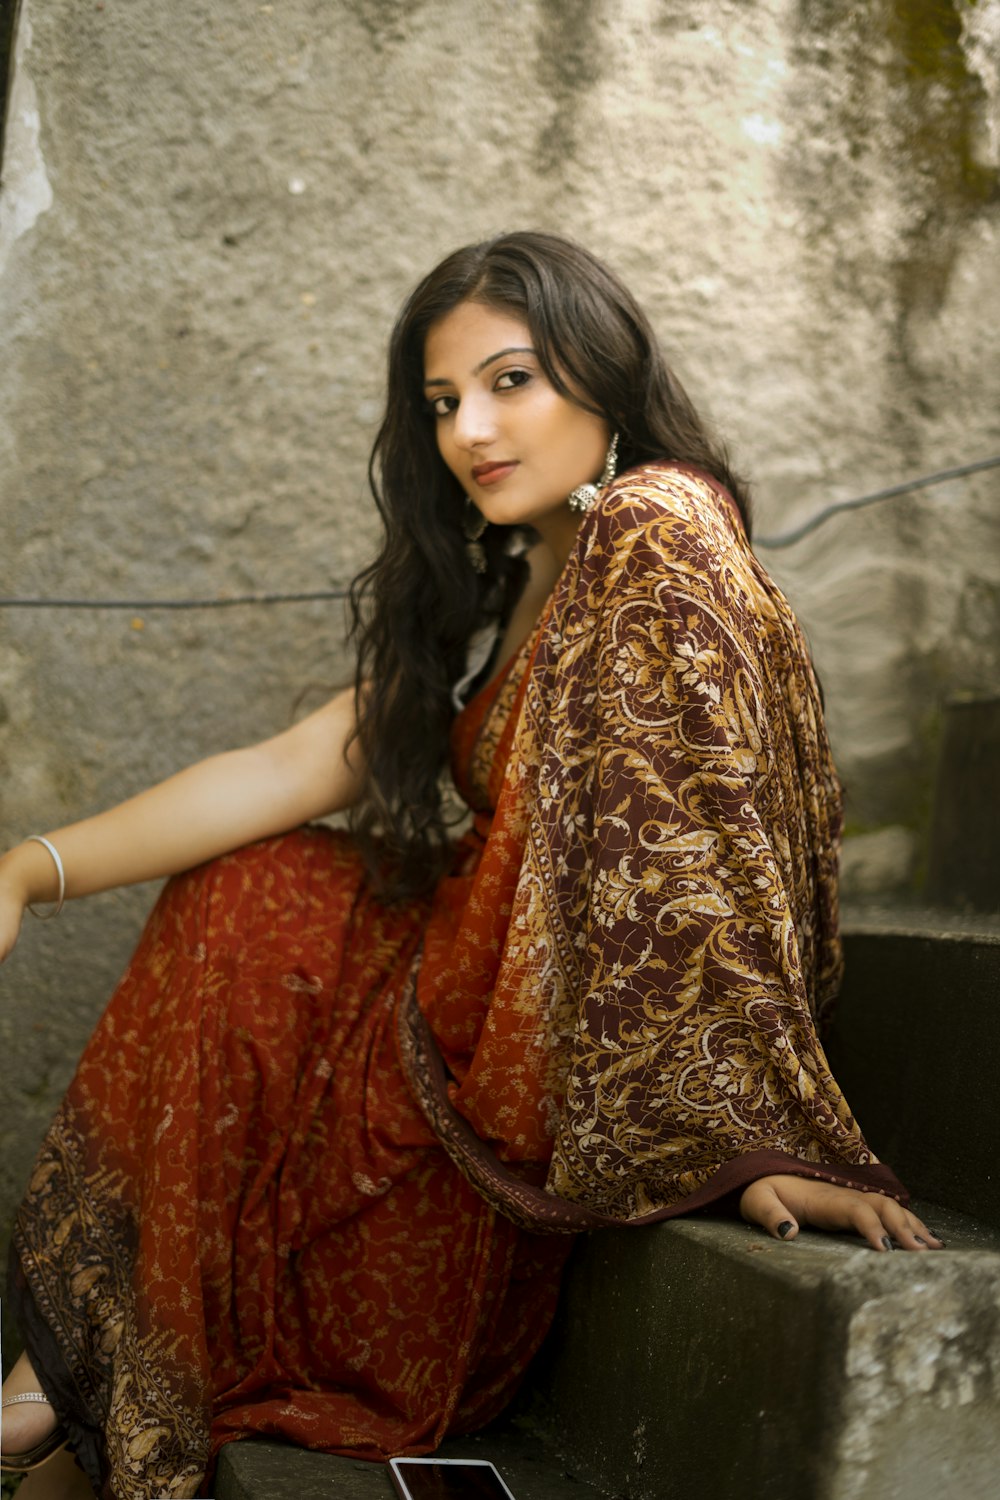 Mujer en vestido de sari rojo y dorado sentada en escaleras de hormigón gris